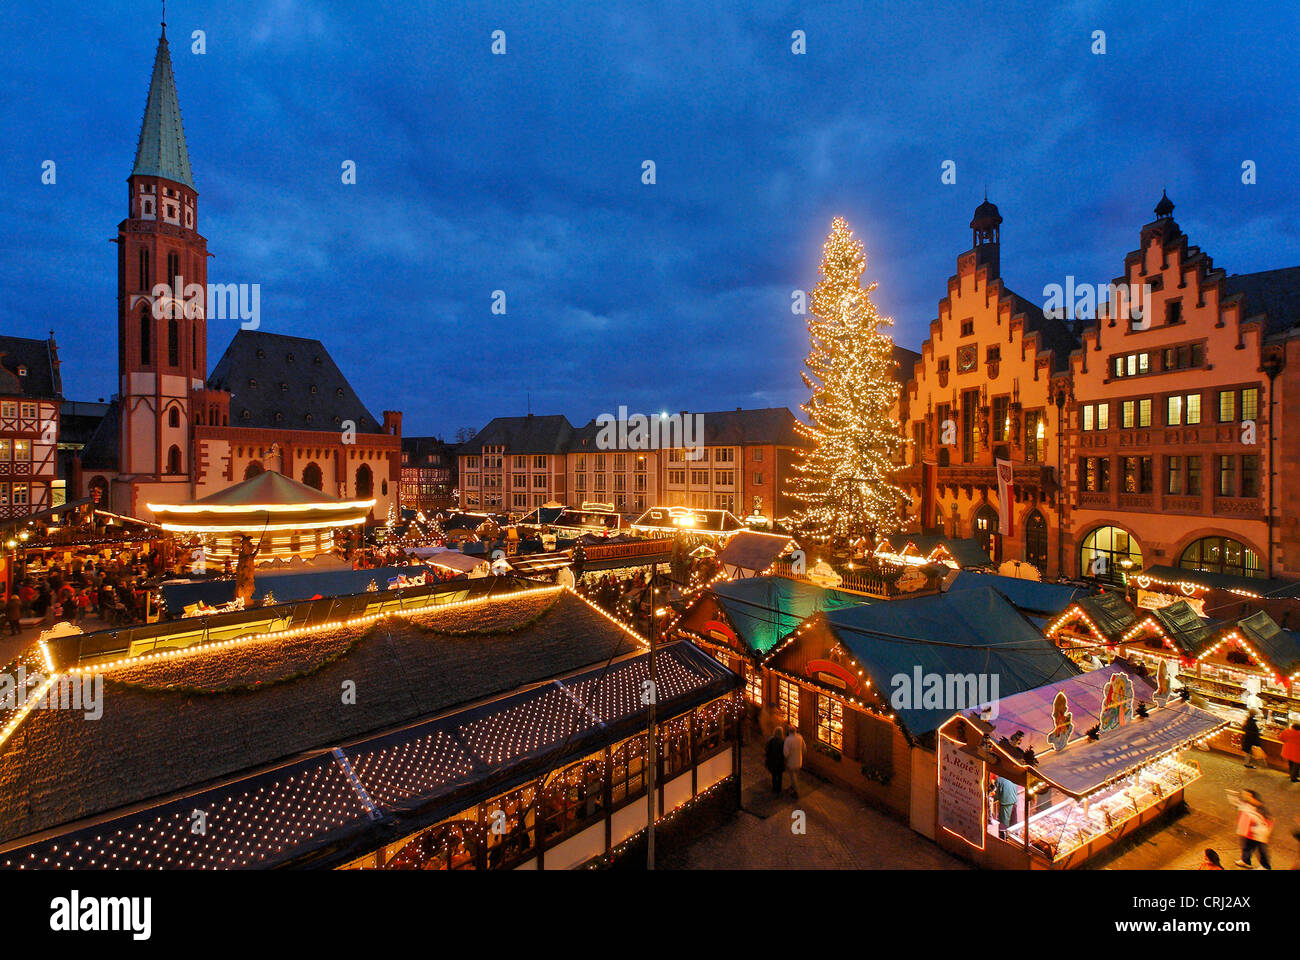 Marché de Noël dans la vieille ville, l'Allemagne, Frankfurt am Main Banque D'Images